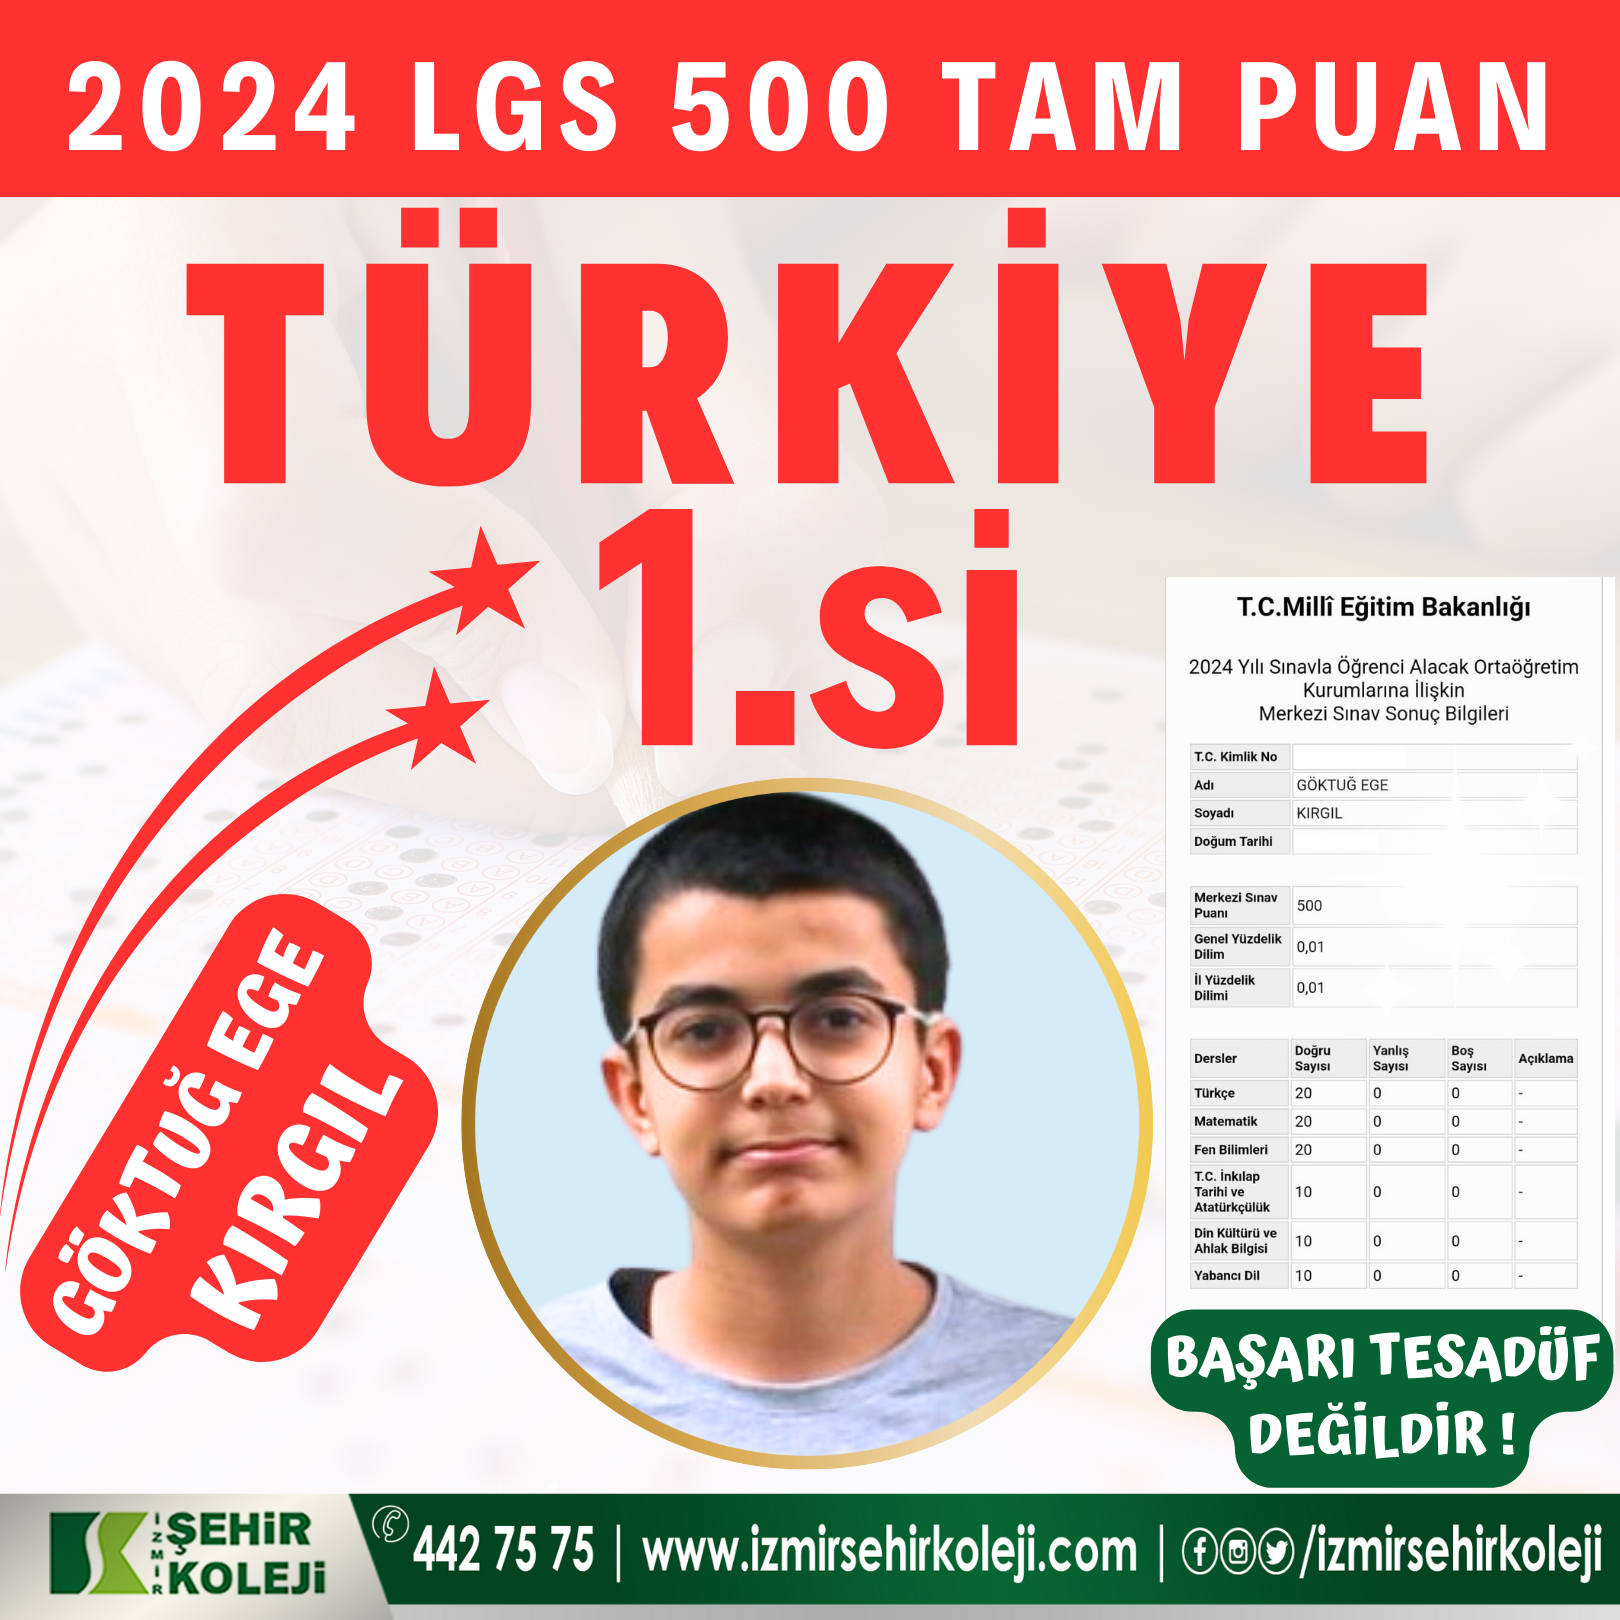 LGS 2024 Türkiye Birincisi